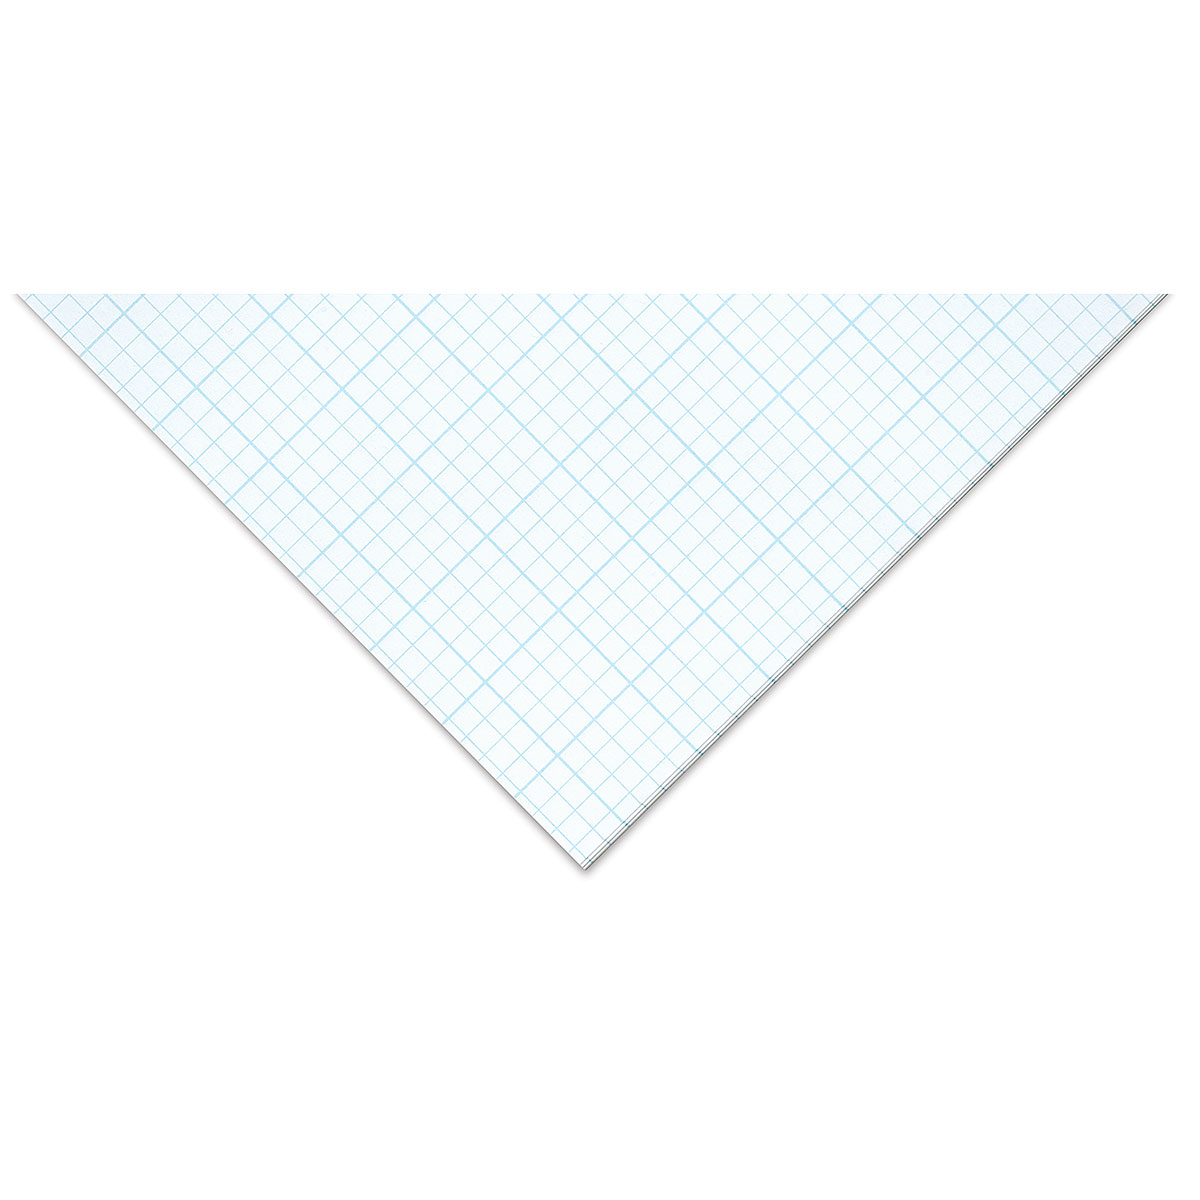 Bienfang Designer Grid Paper Pad, 4X4 Grid, 8.5 X 11